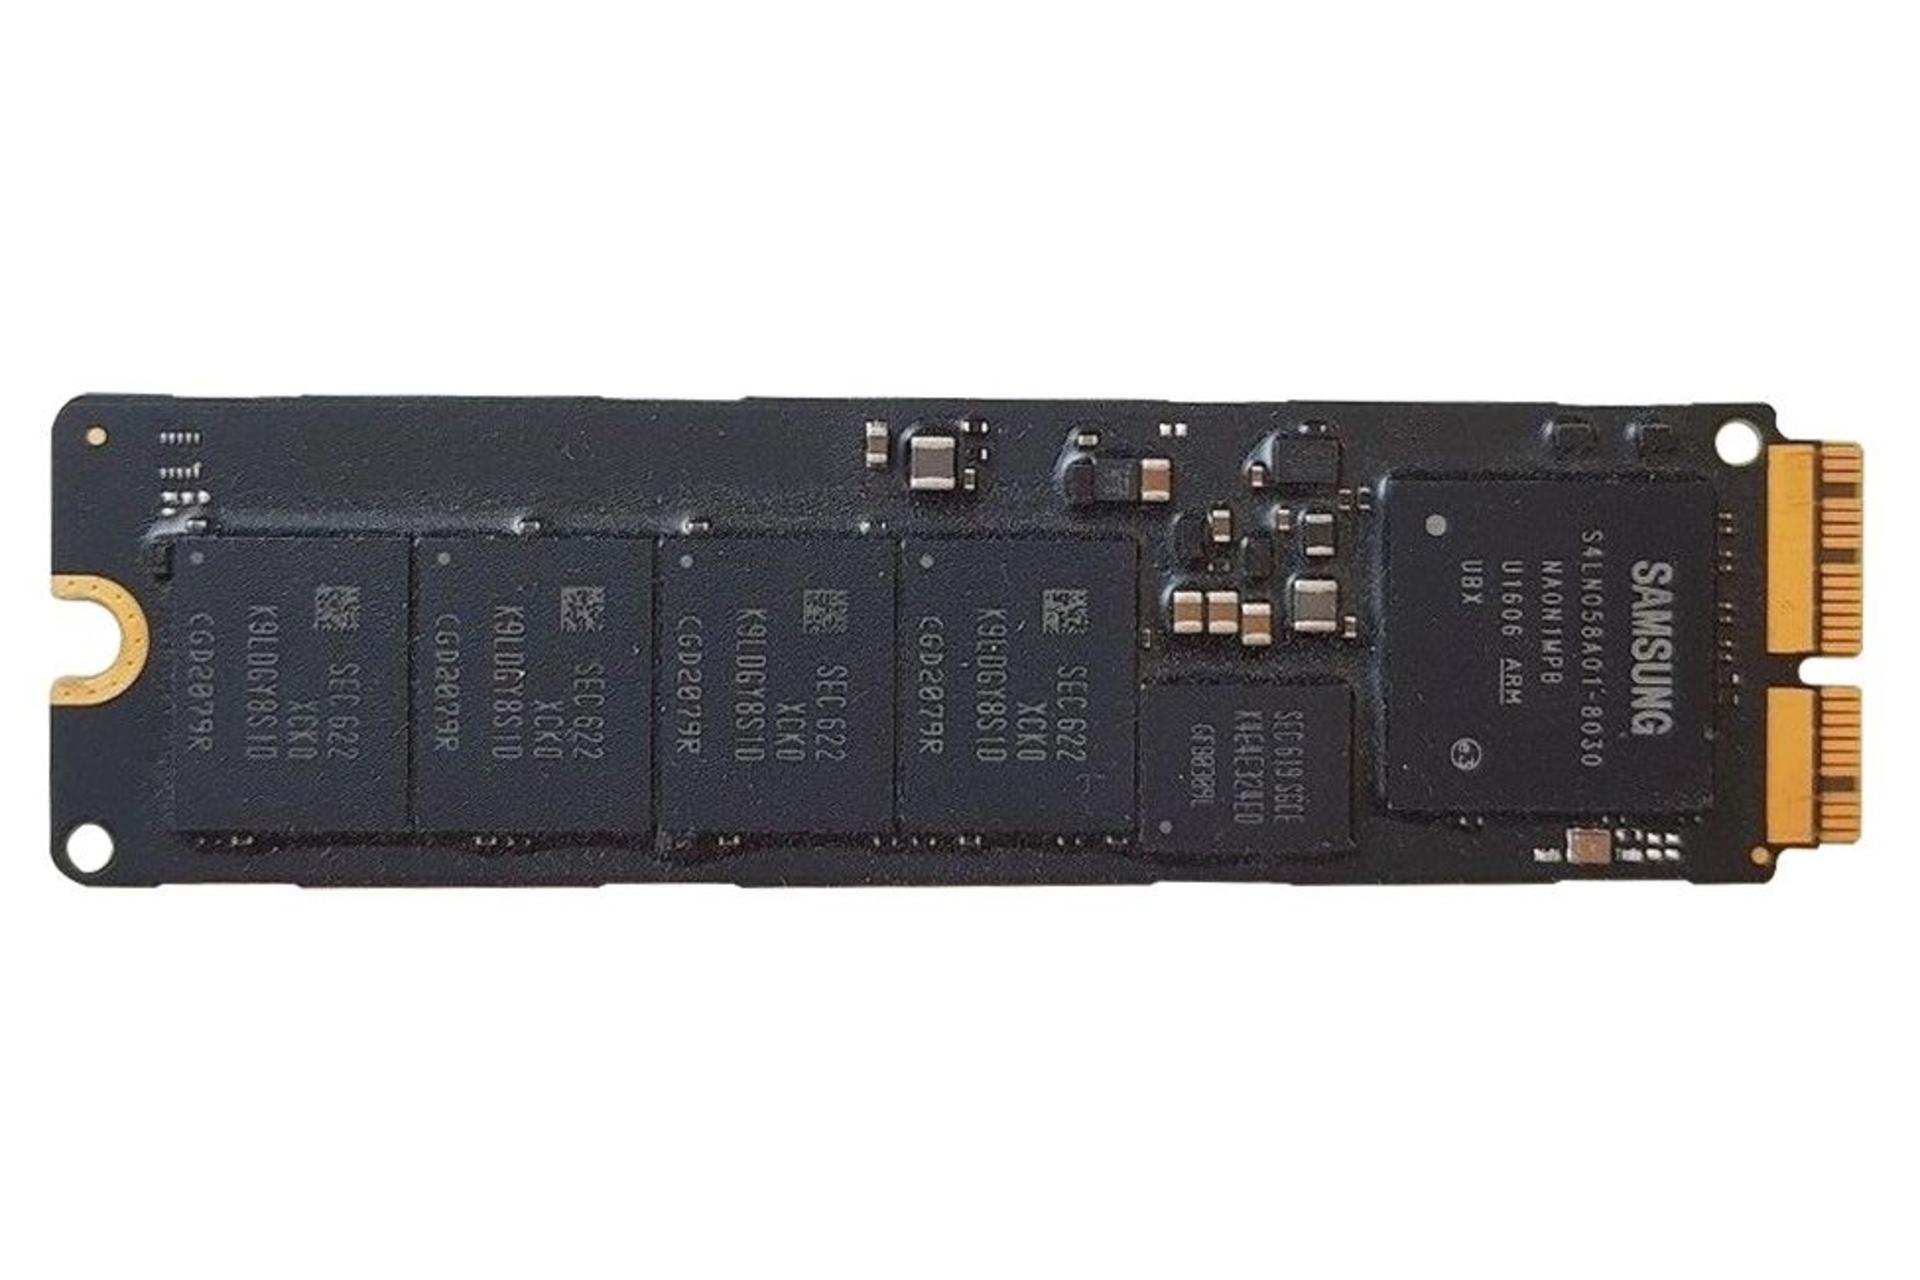 مرجع متخصصين ايران SSD سامسونگ Samsung MZ-JPU256T/0A6 256GB ظرفيت 256 گيگابايت